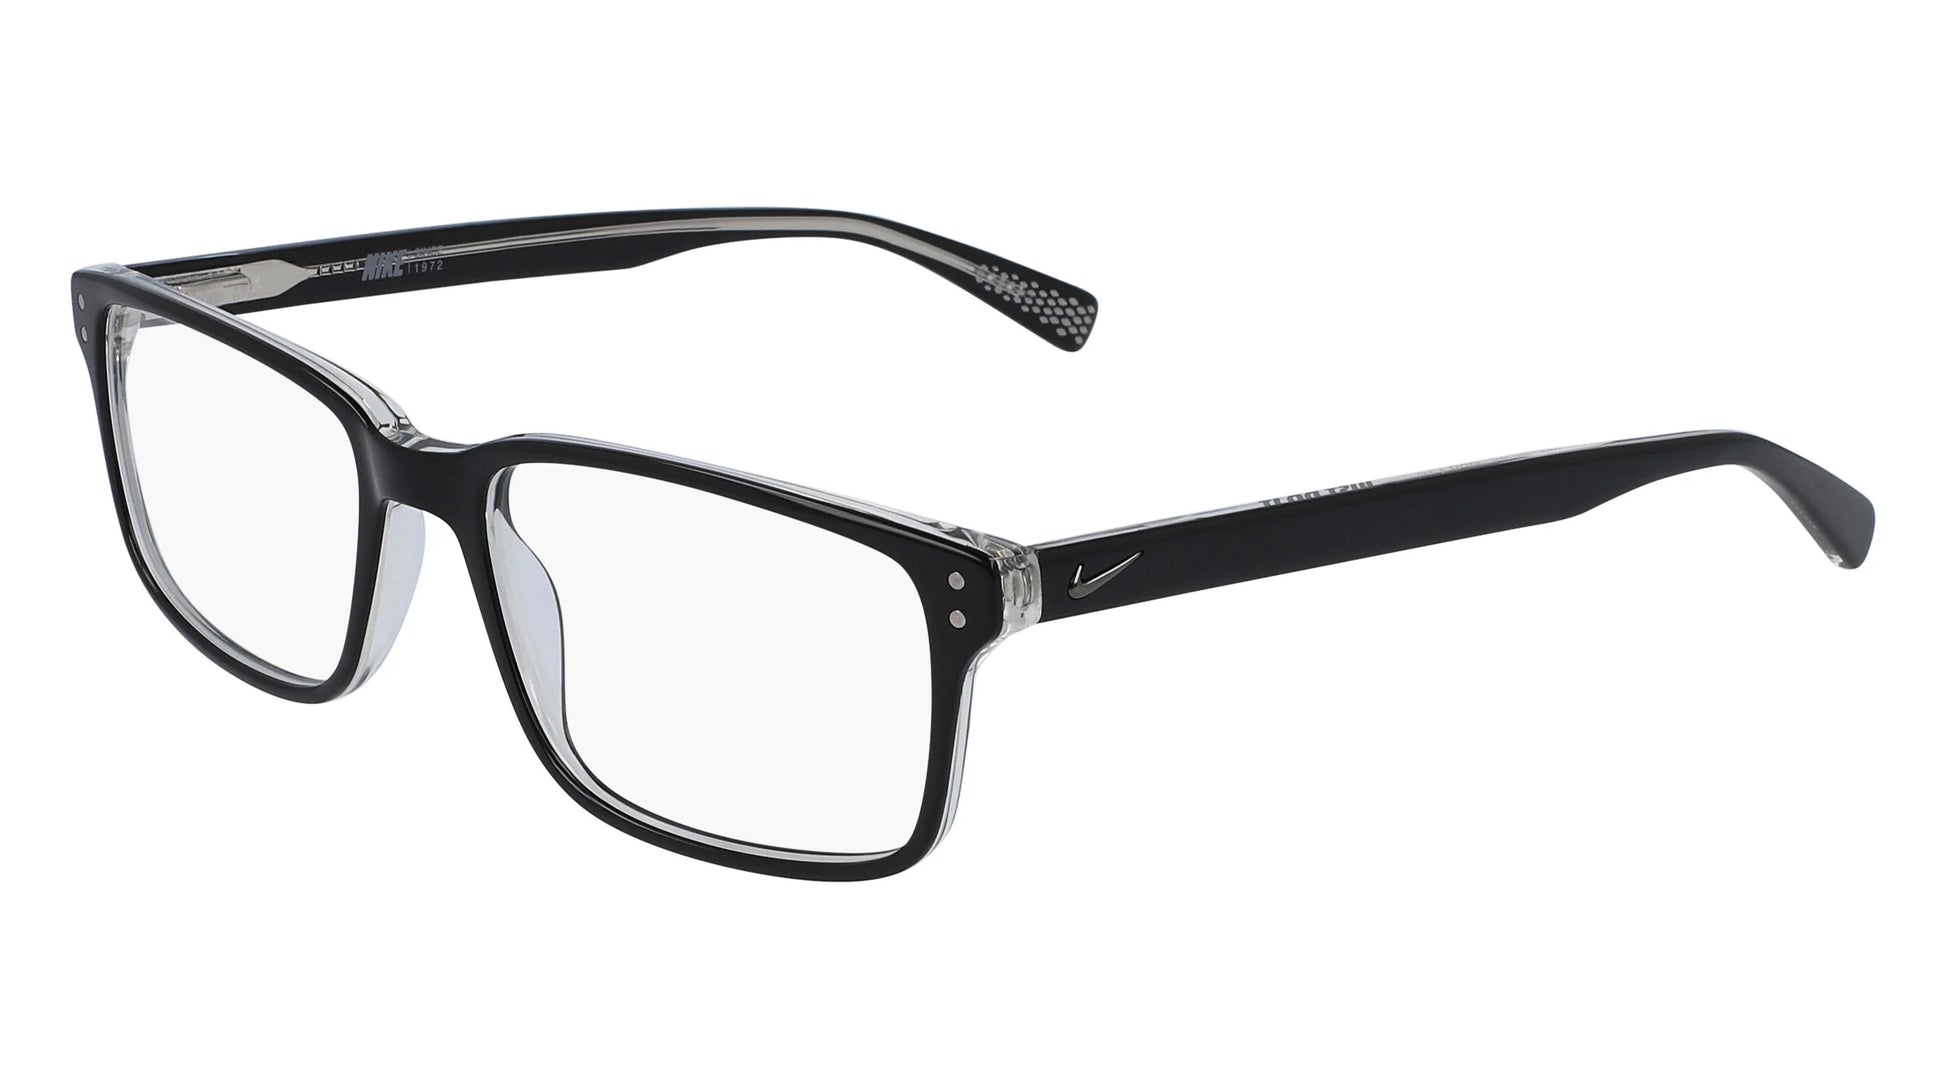 Nike 7240 Eyeglasses Black / Clear